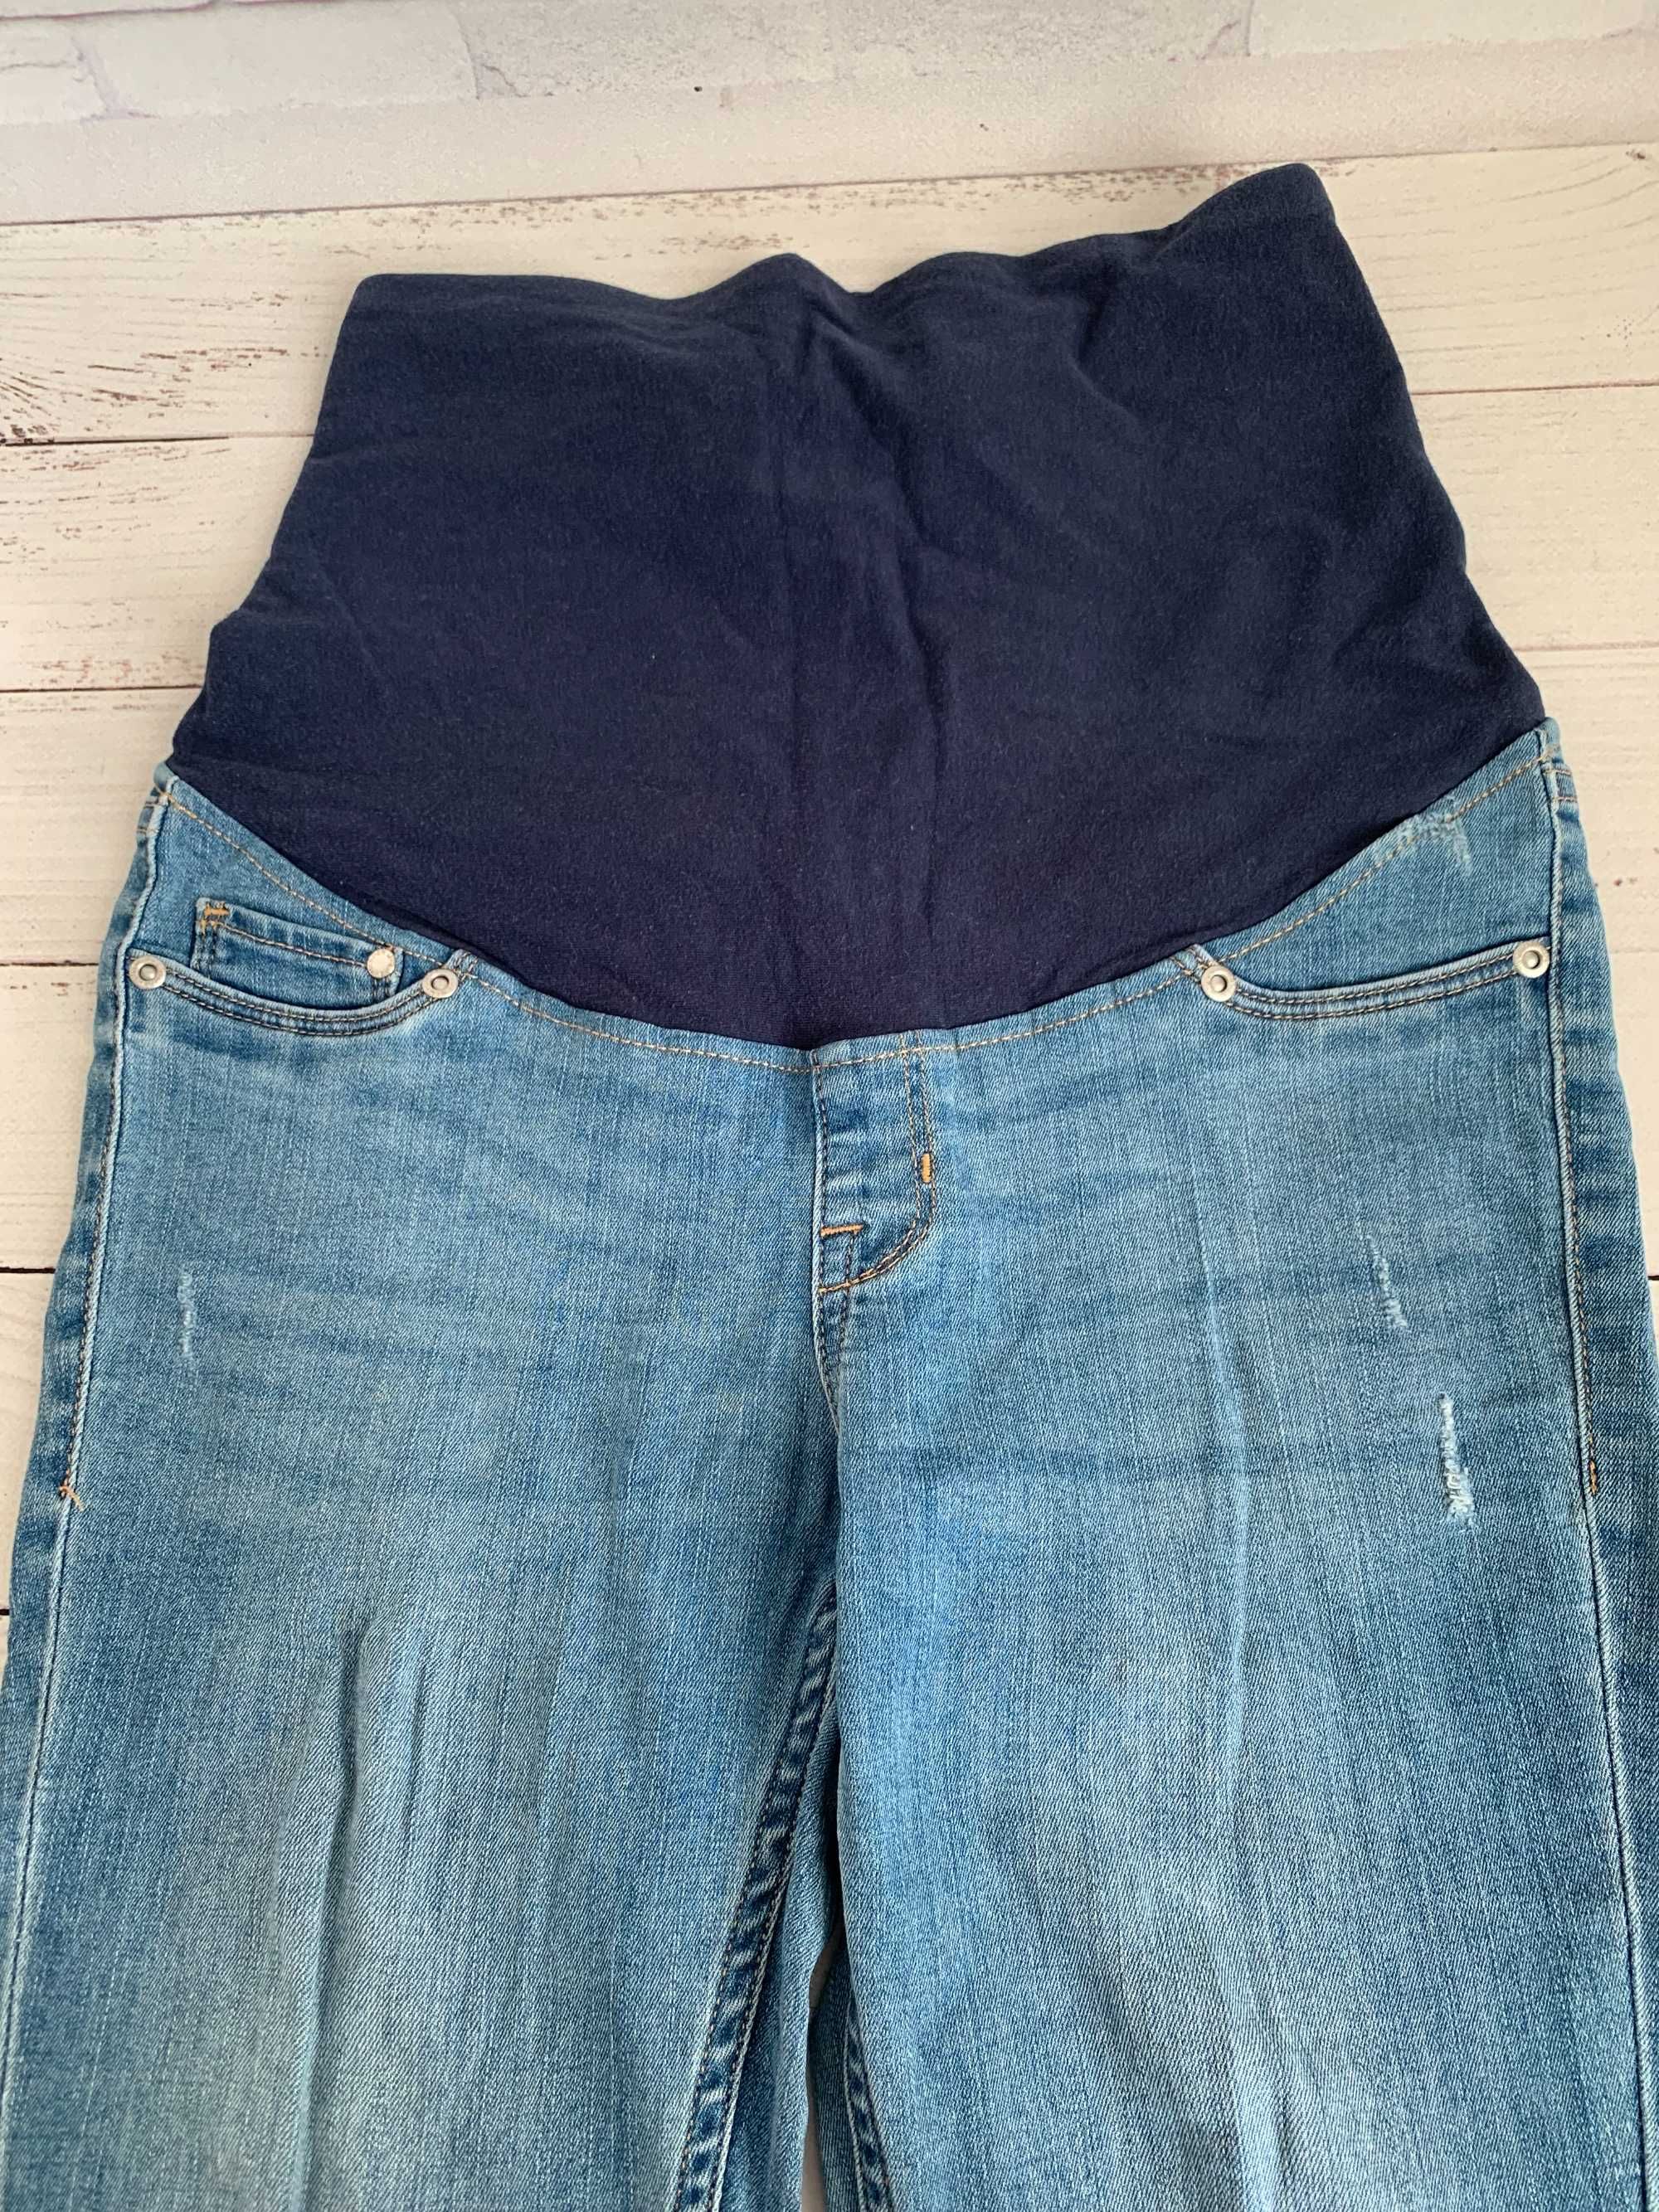 Джинсові штани з трикотажним поясом для вагітних, розмір S або М